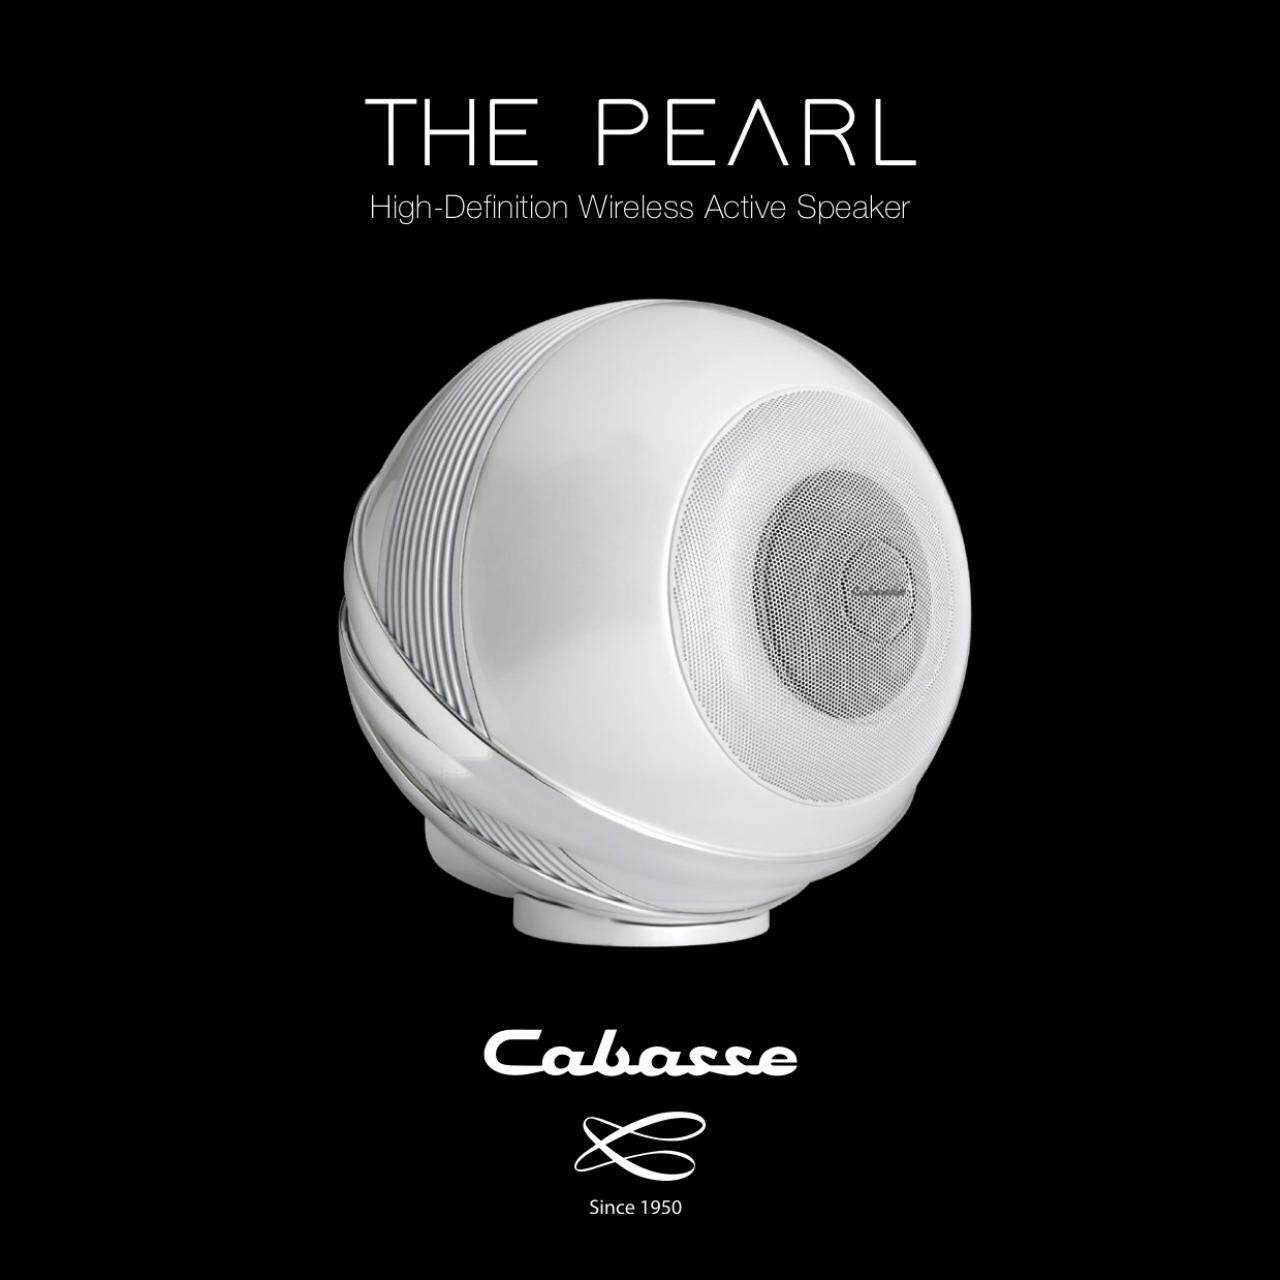 ลำโพงไร้สาย Cabasse The Pearl รองรับการเชื่อมต่อแบบ Bluetooth และ WiFi